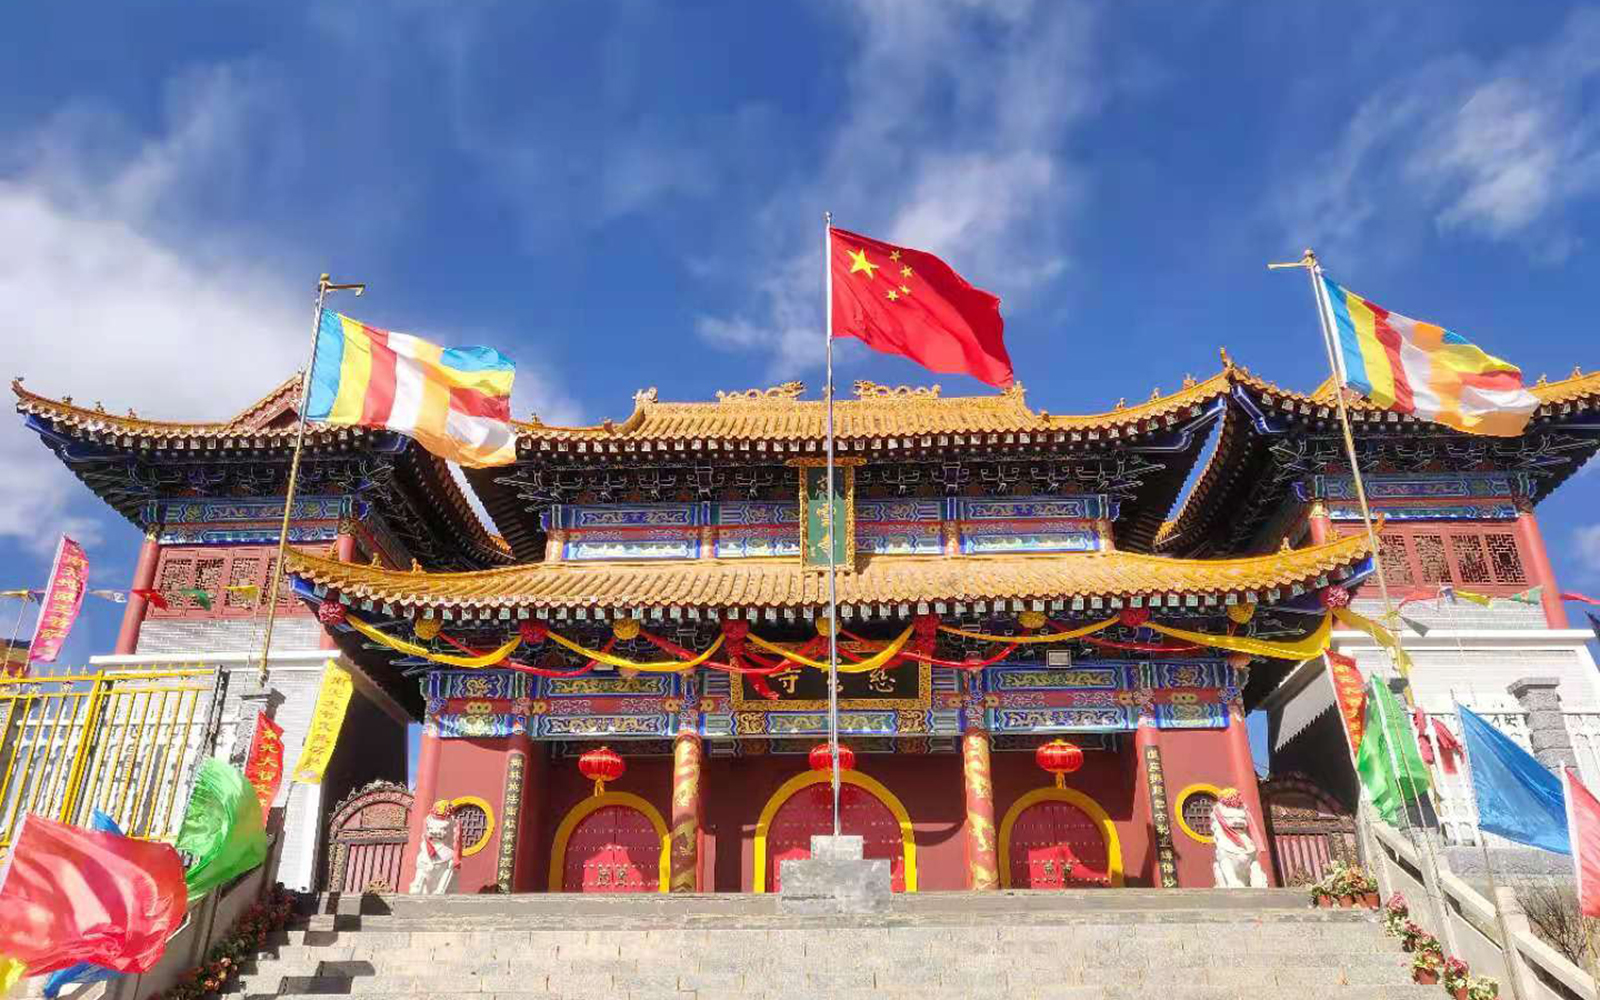 臨潭慈雲寺：坐落在藏漢門戶的漢傳佛教寺院